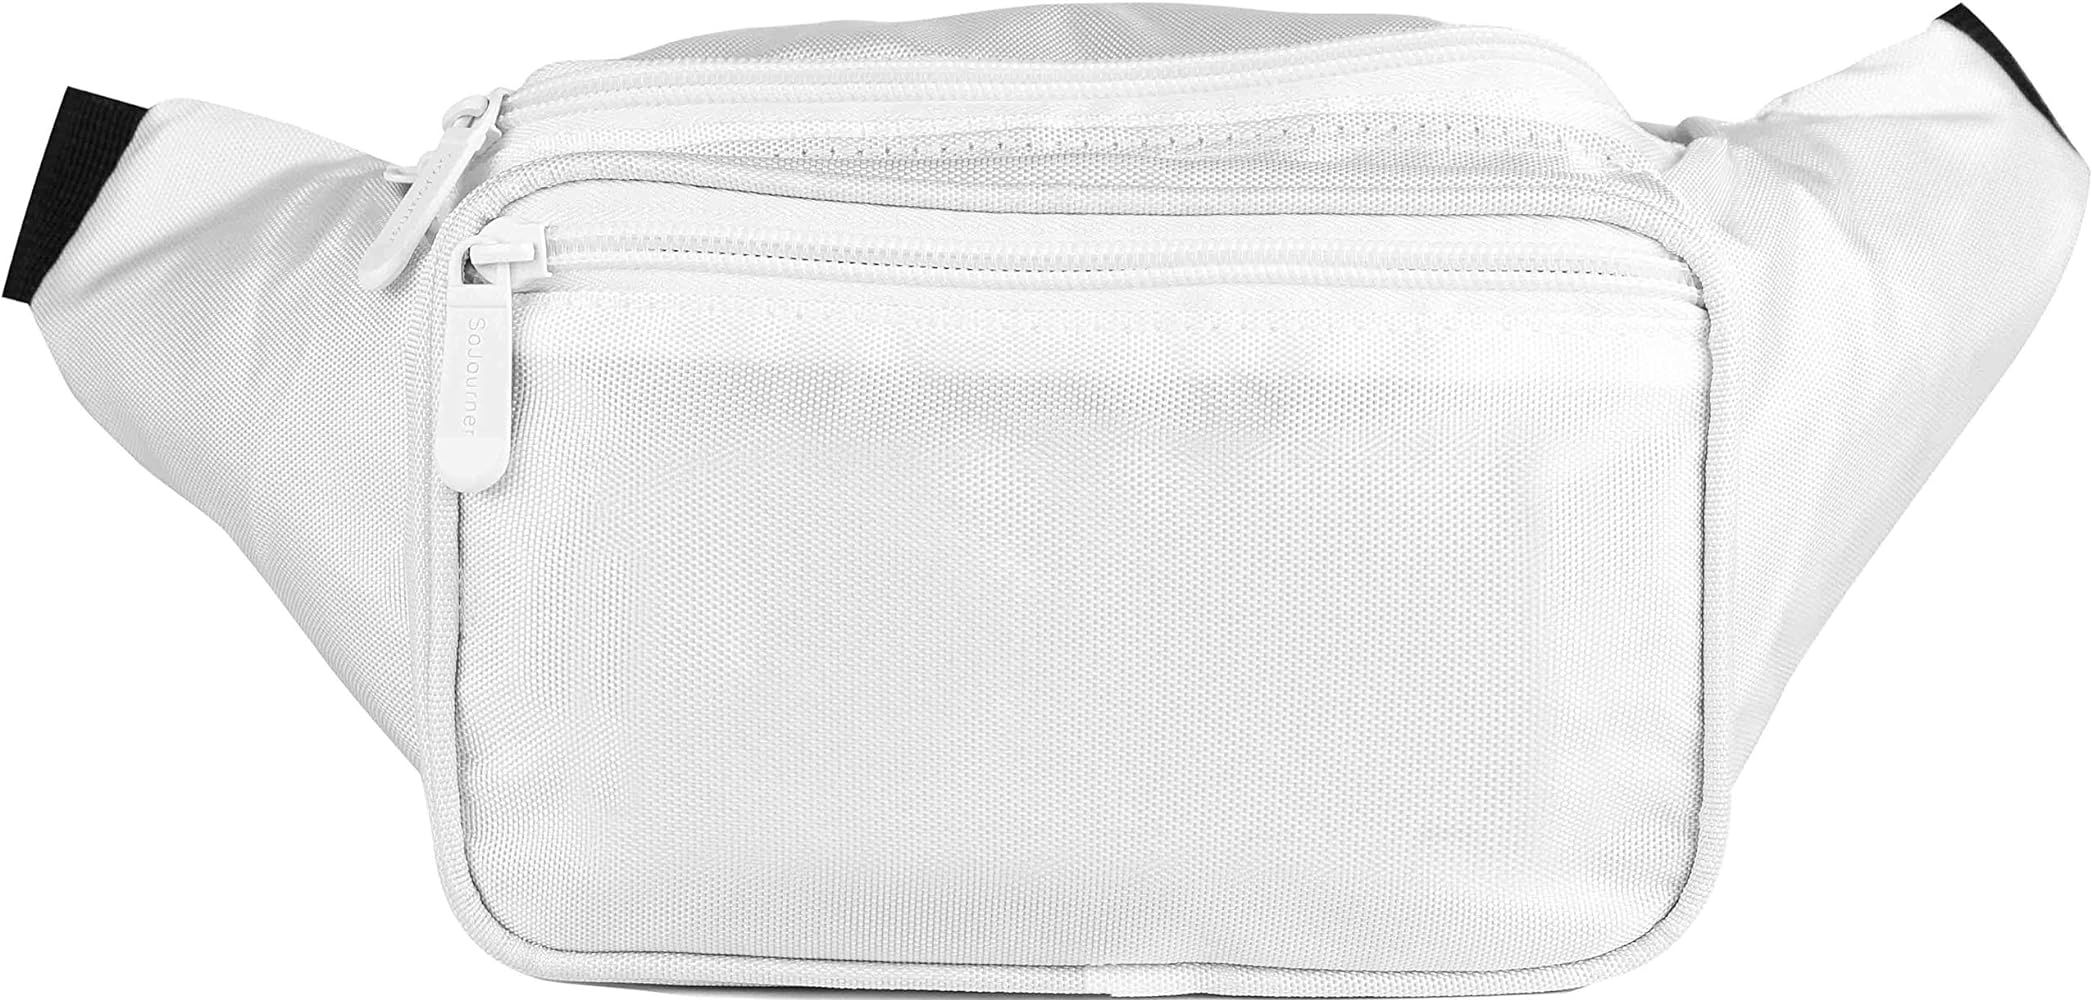 SoJourner White Fanny Pack - Packs for men, women | Cute Festival Waist Bag Fashion Belt Bags | Amazon (US)